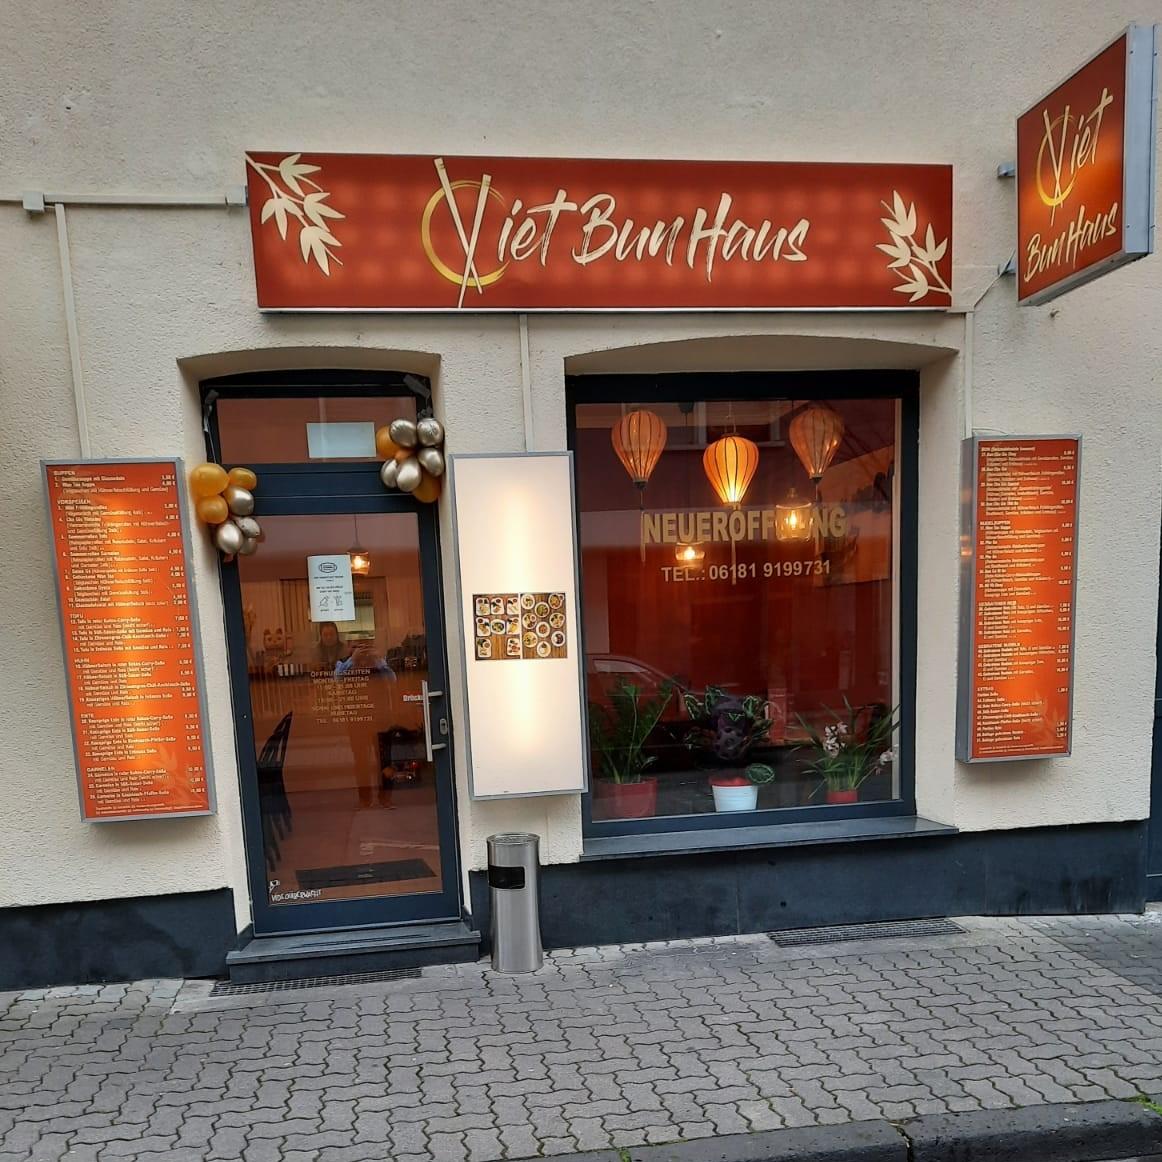 Restaurant "Viet Bun Haus" in Hanau